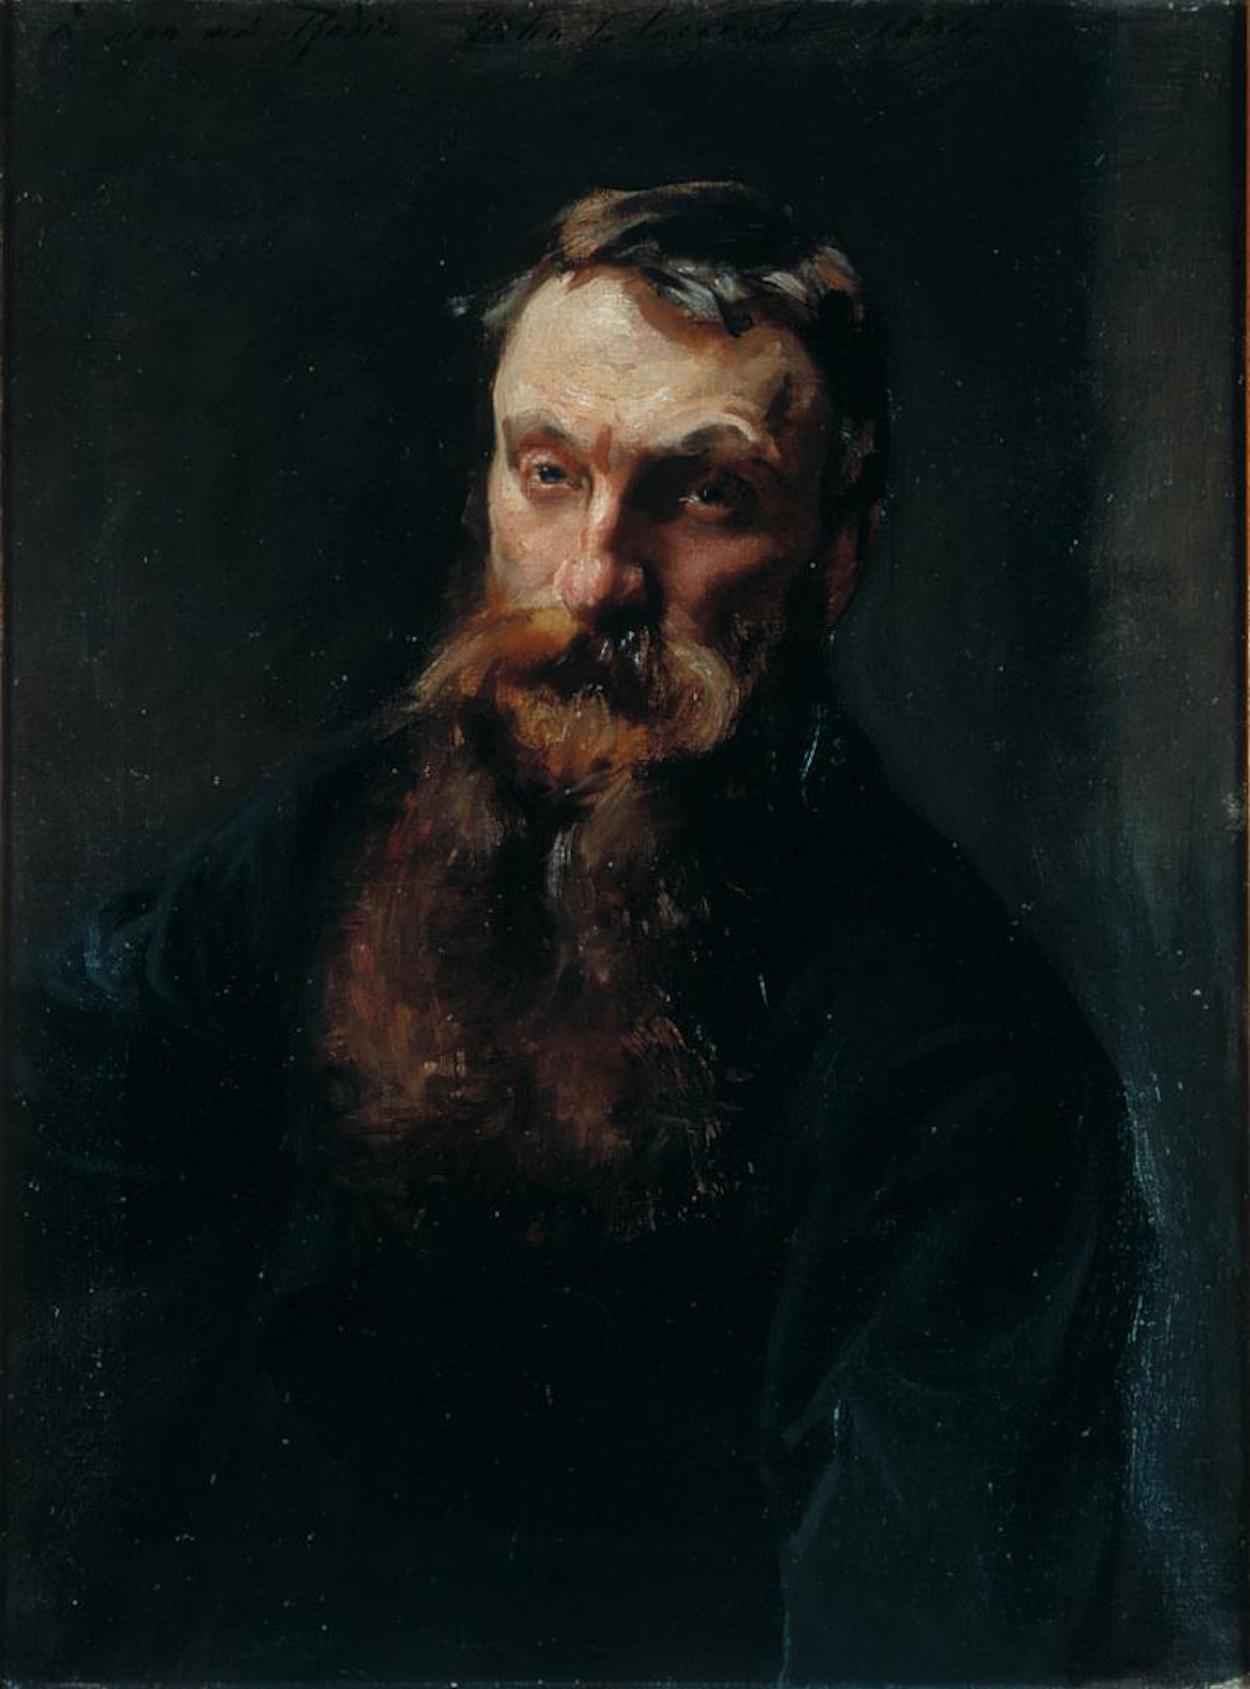 Retrato de Rodin by John Singer Sargent - 1884 